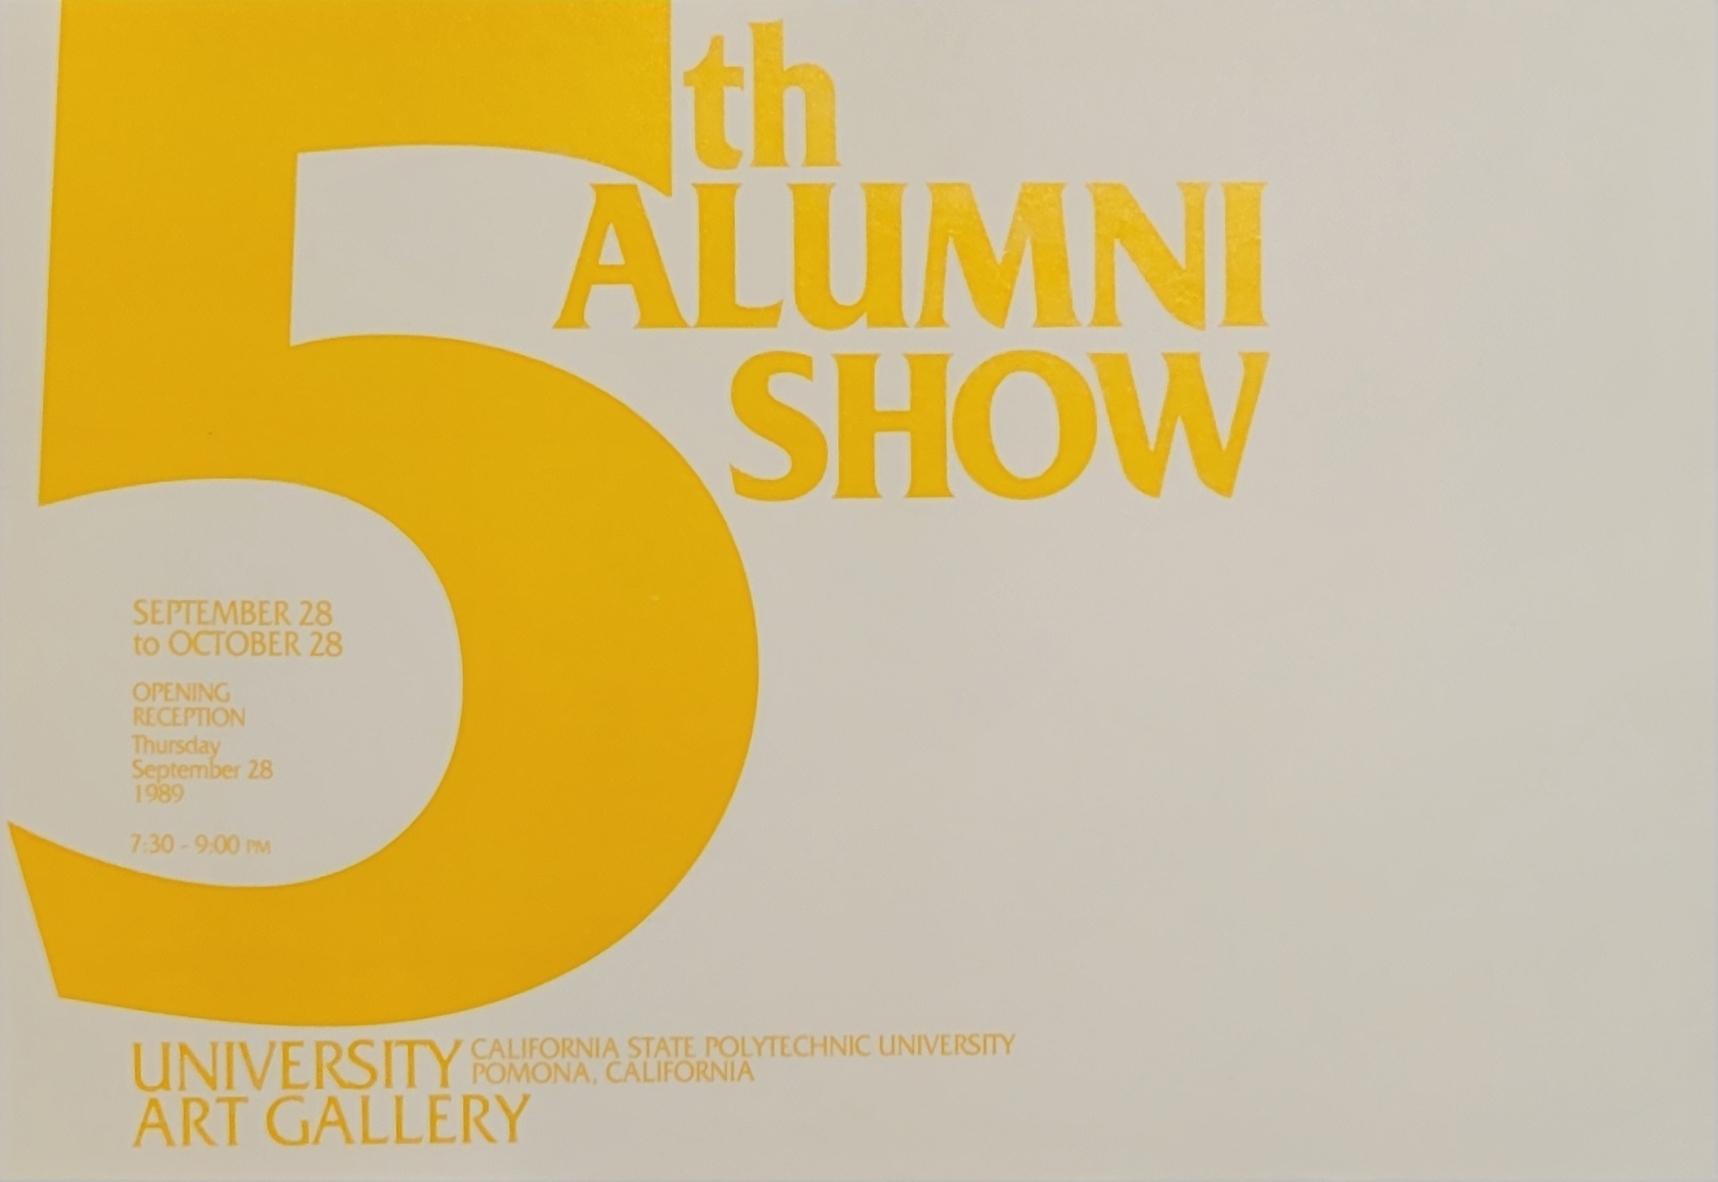 5th alumni show